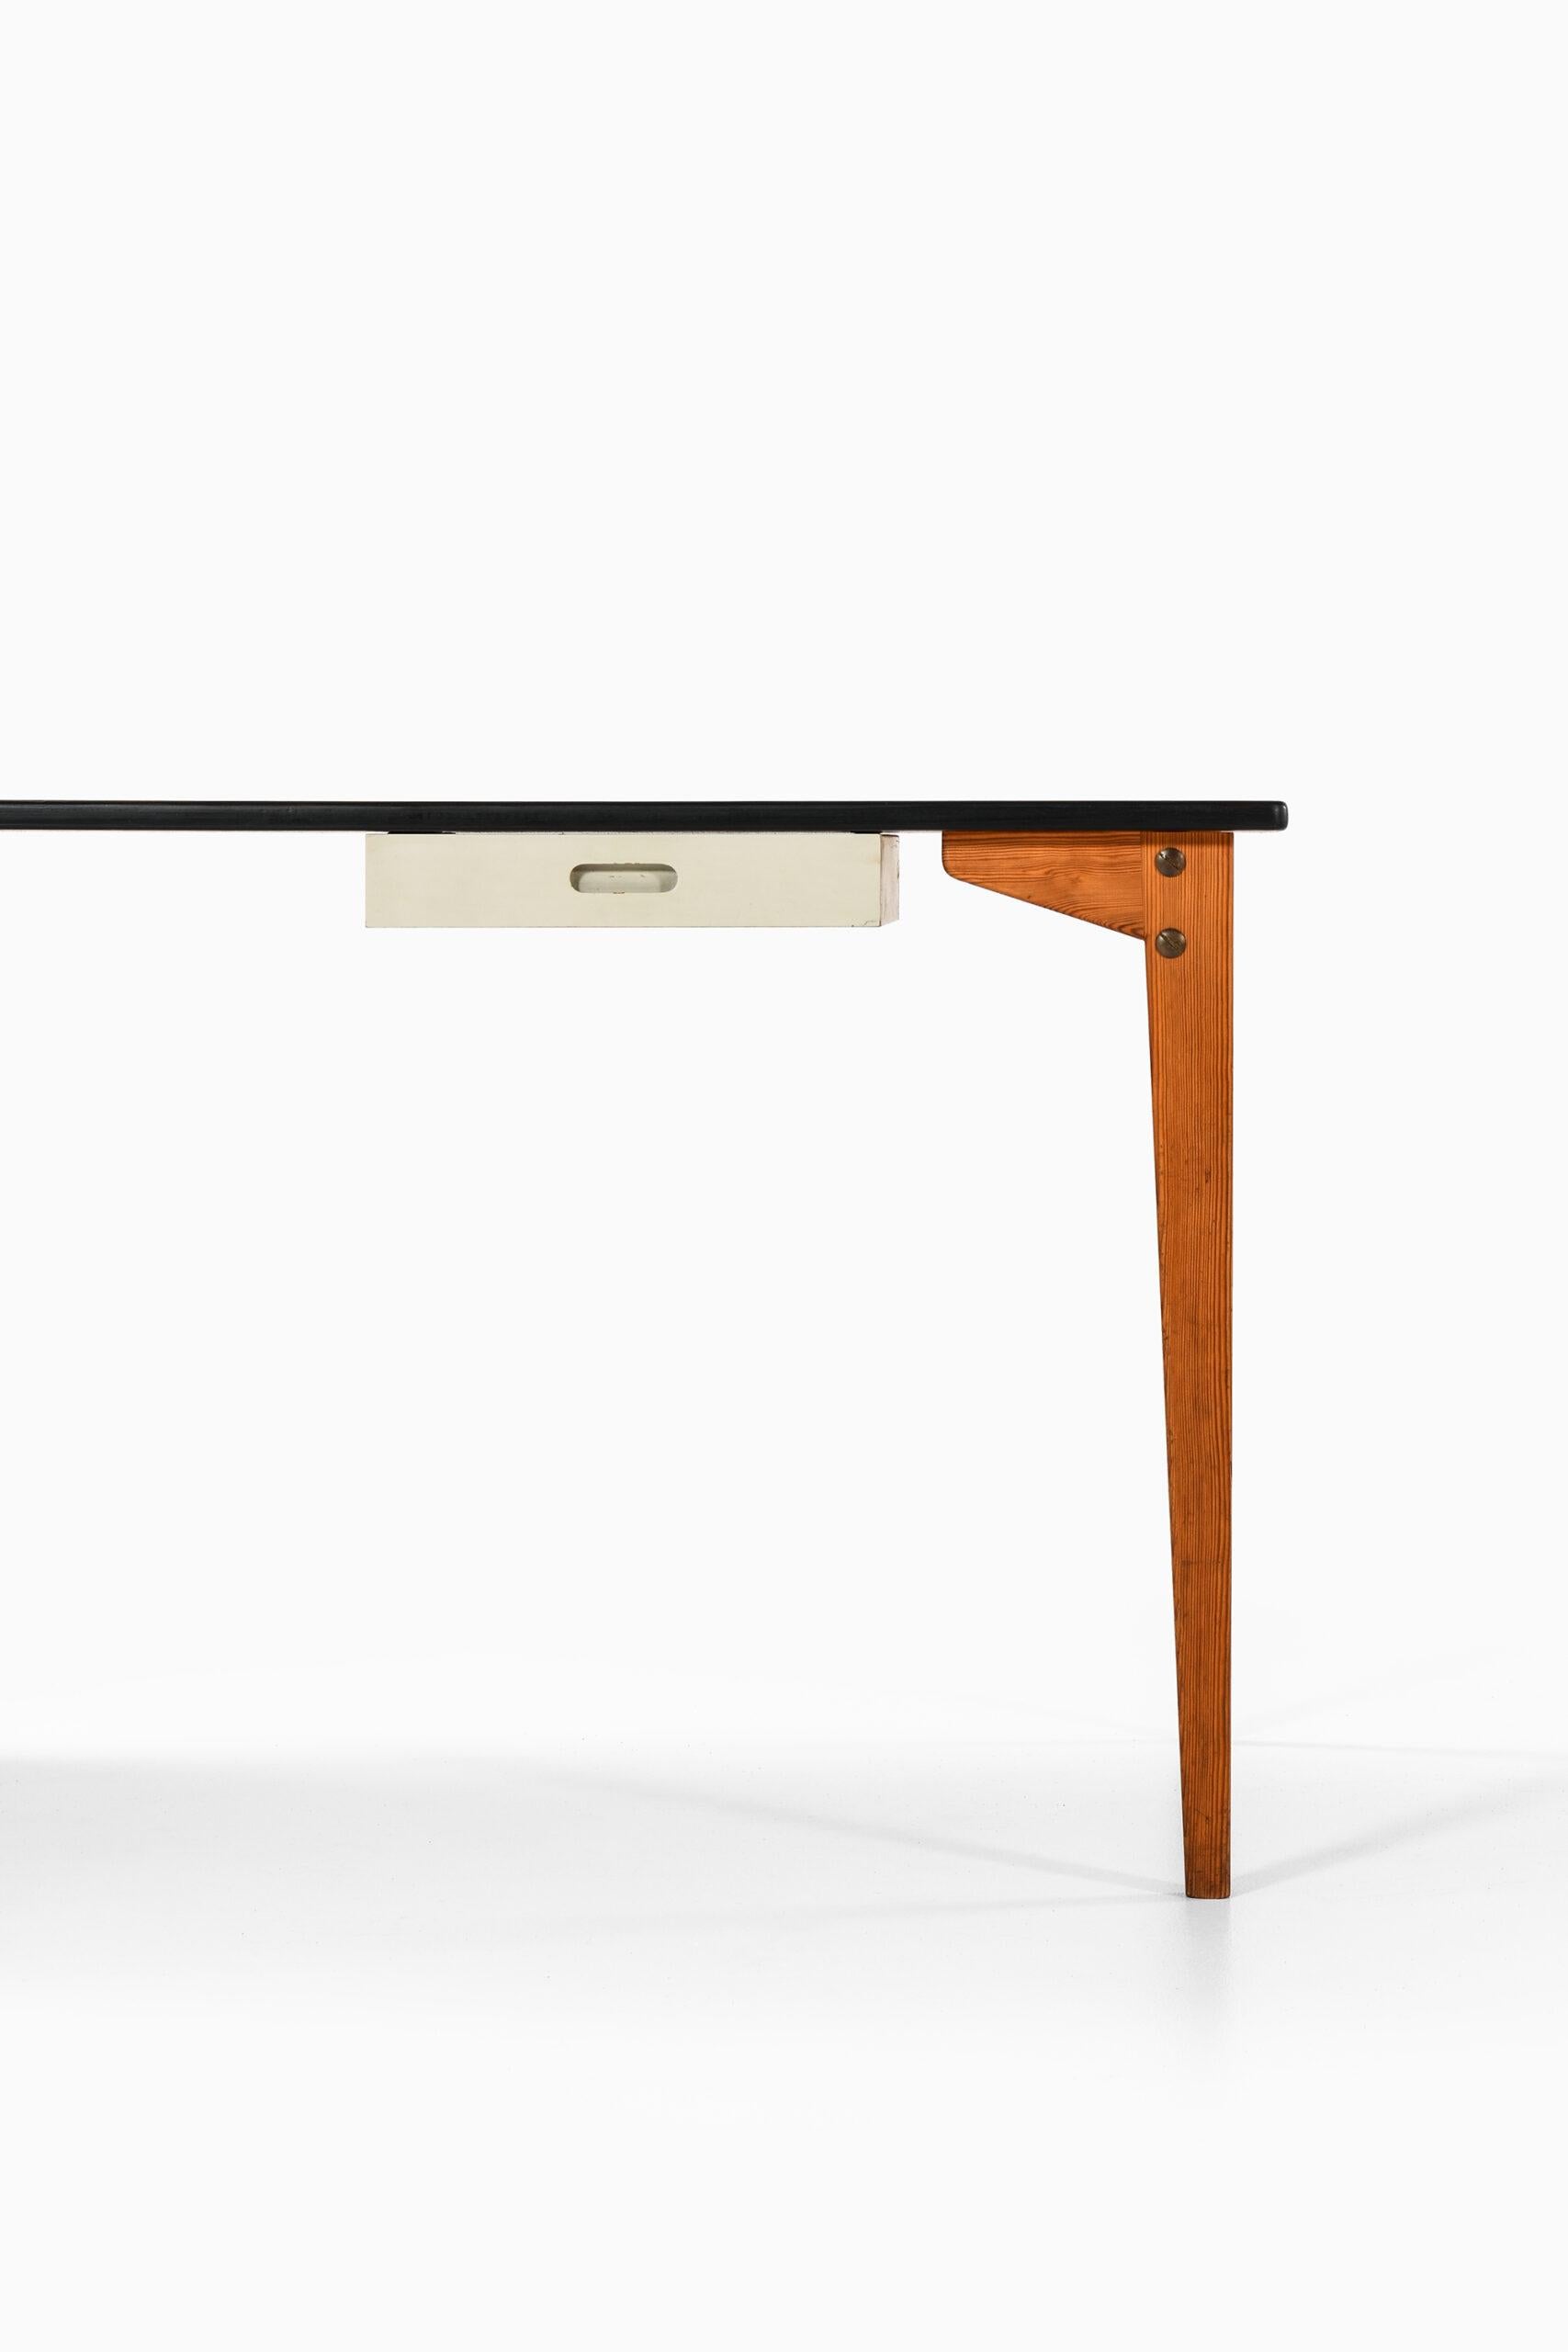 Seltener freistehender Schreibtisch eines unbekannten Designers. Wahrscheinlich in Schweden hergestellt.
Breite: 132,5 ( 197,5 ) cm.